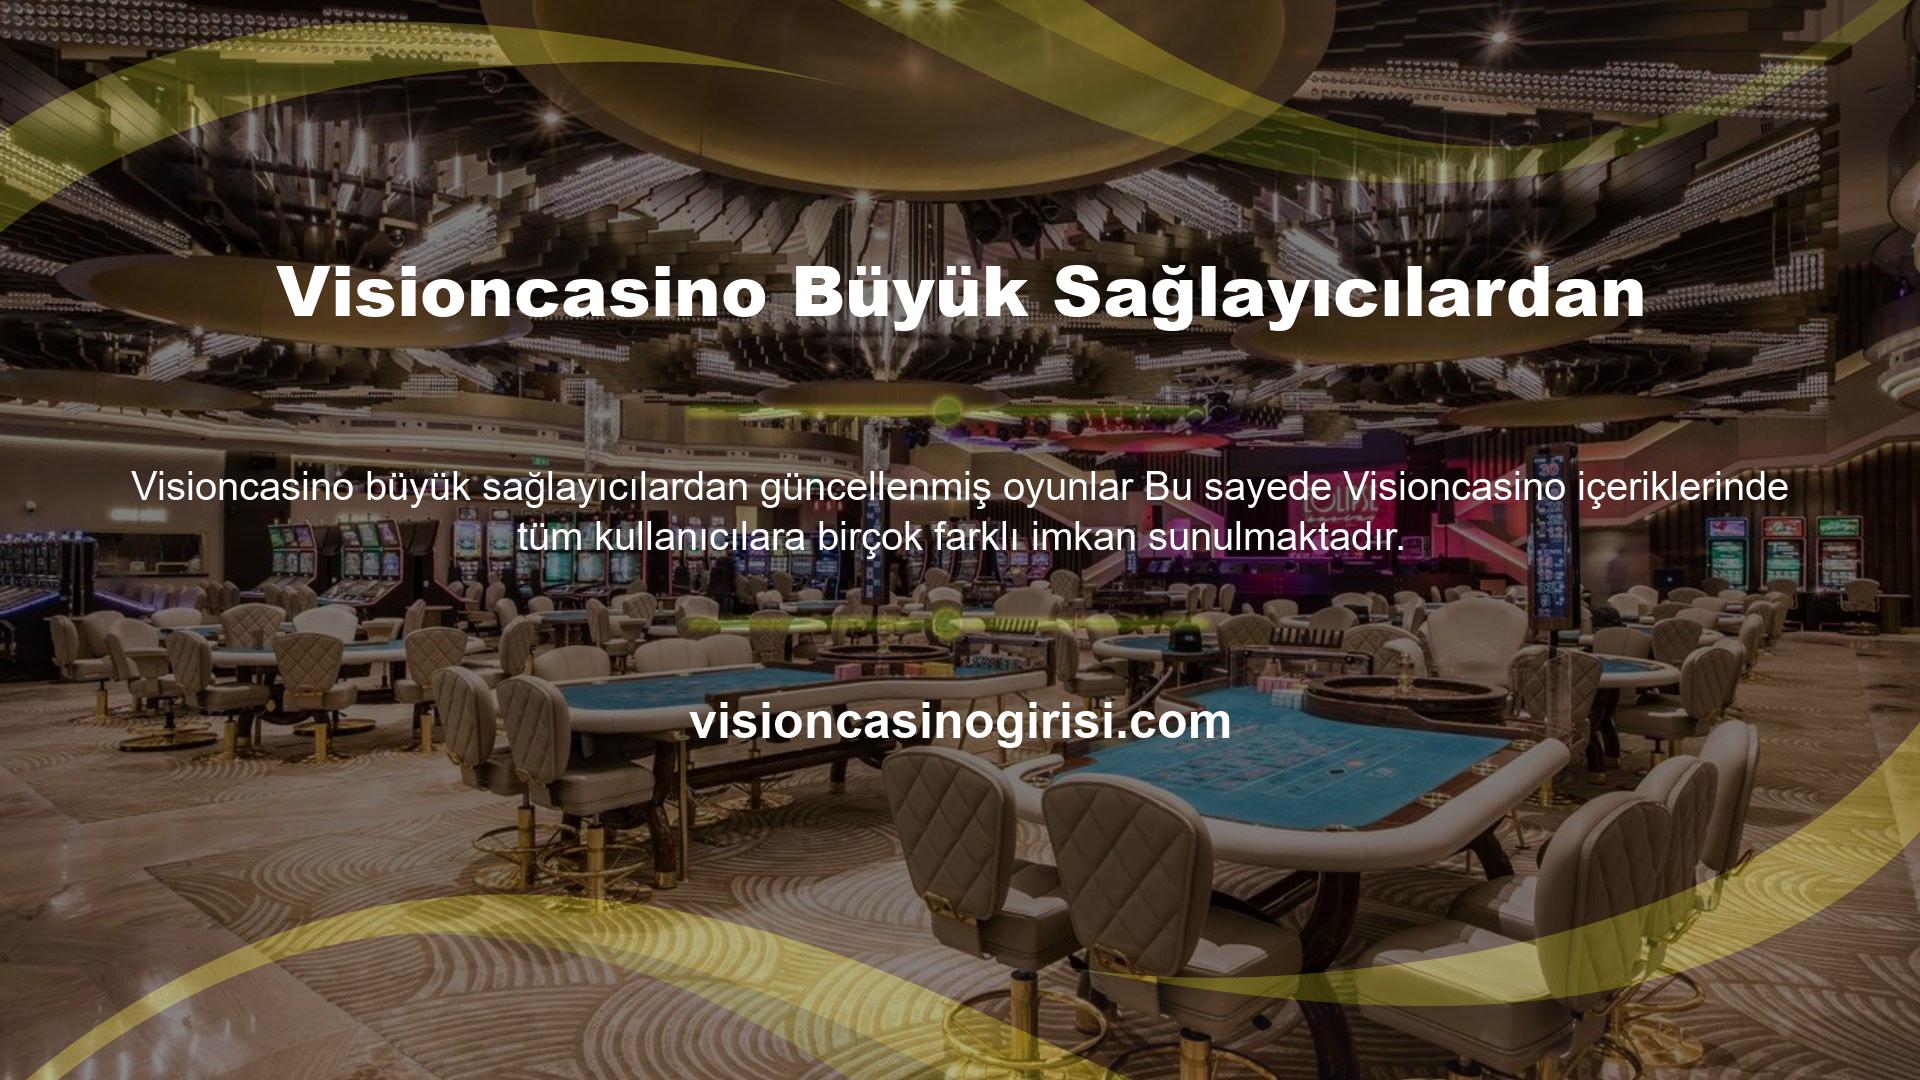 Visioncasino sitesi ülkemizde faaliyet gösteren casino sitelerinden biridir